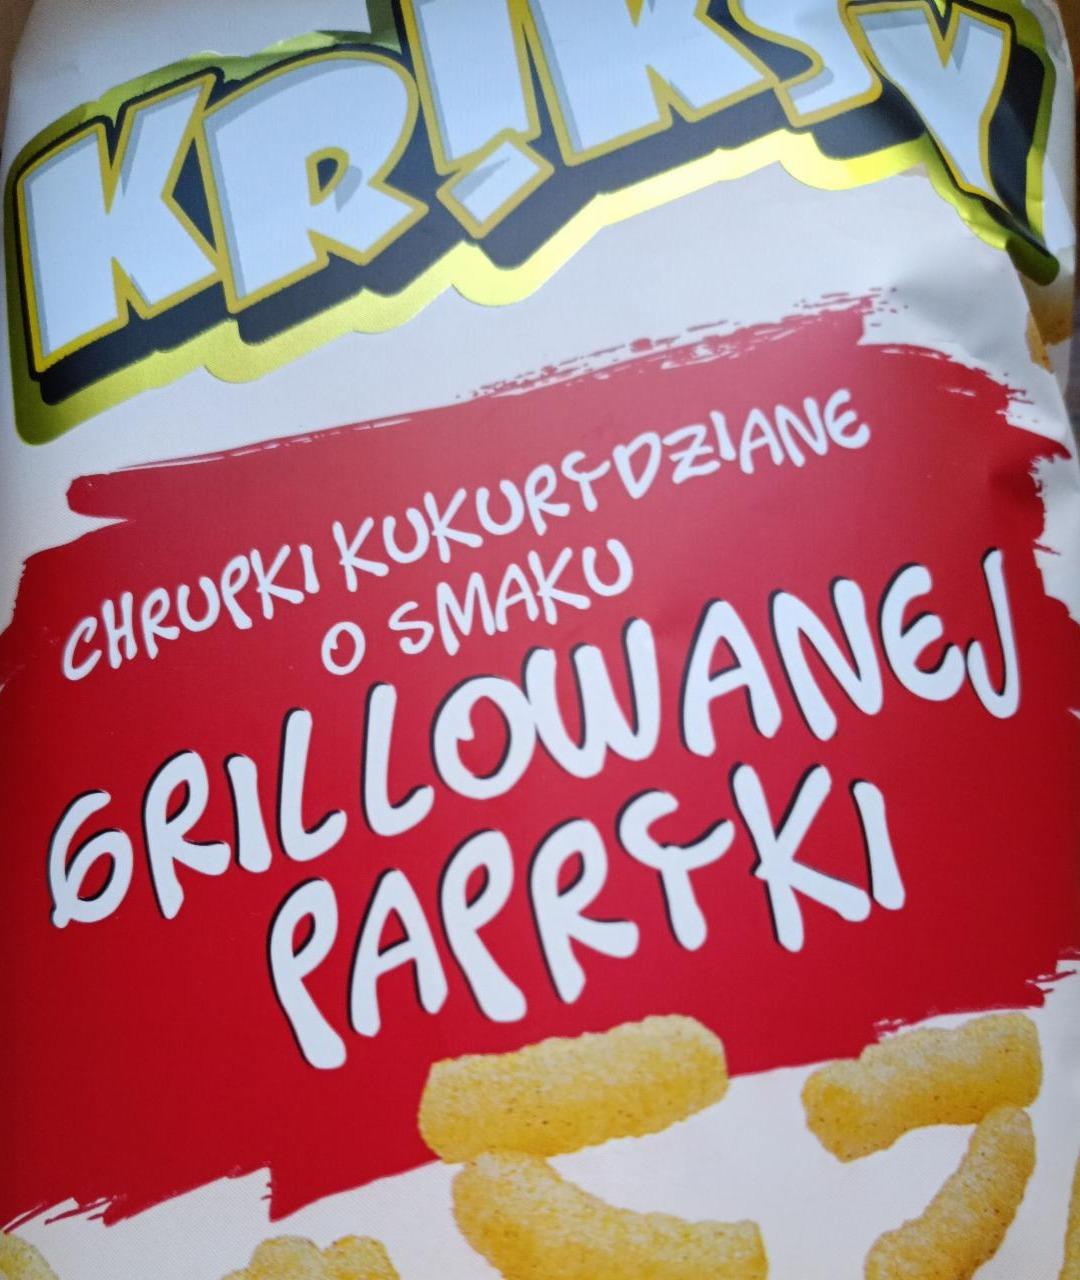 Zdjęcia - Chrupki kukurydziane o smaku grillowanej papryki Kr!ksy